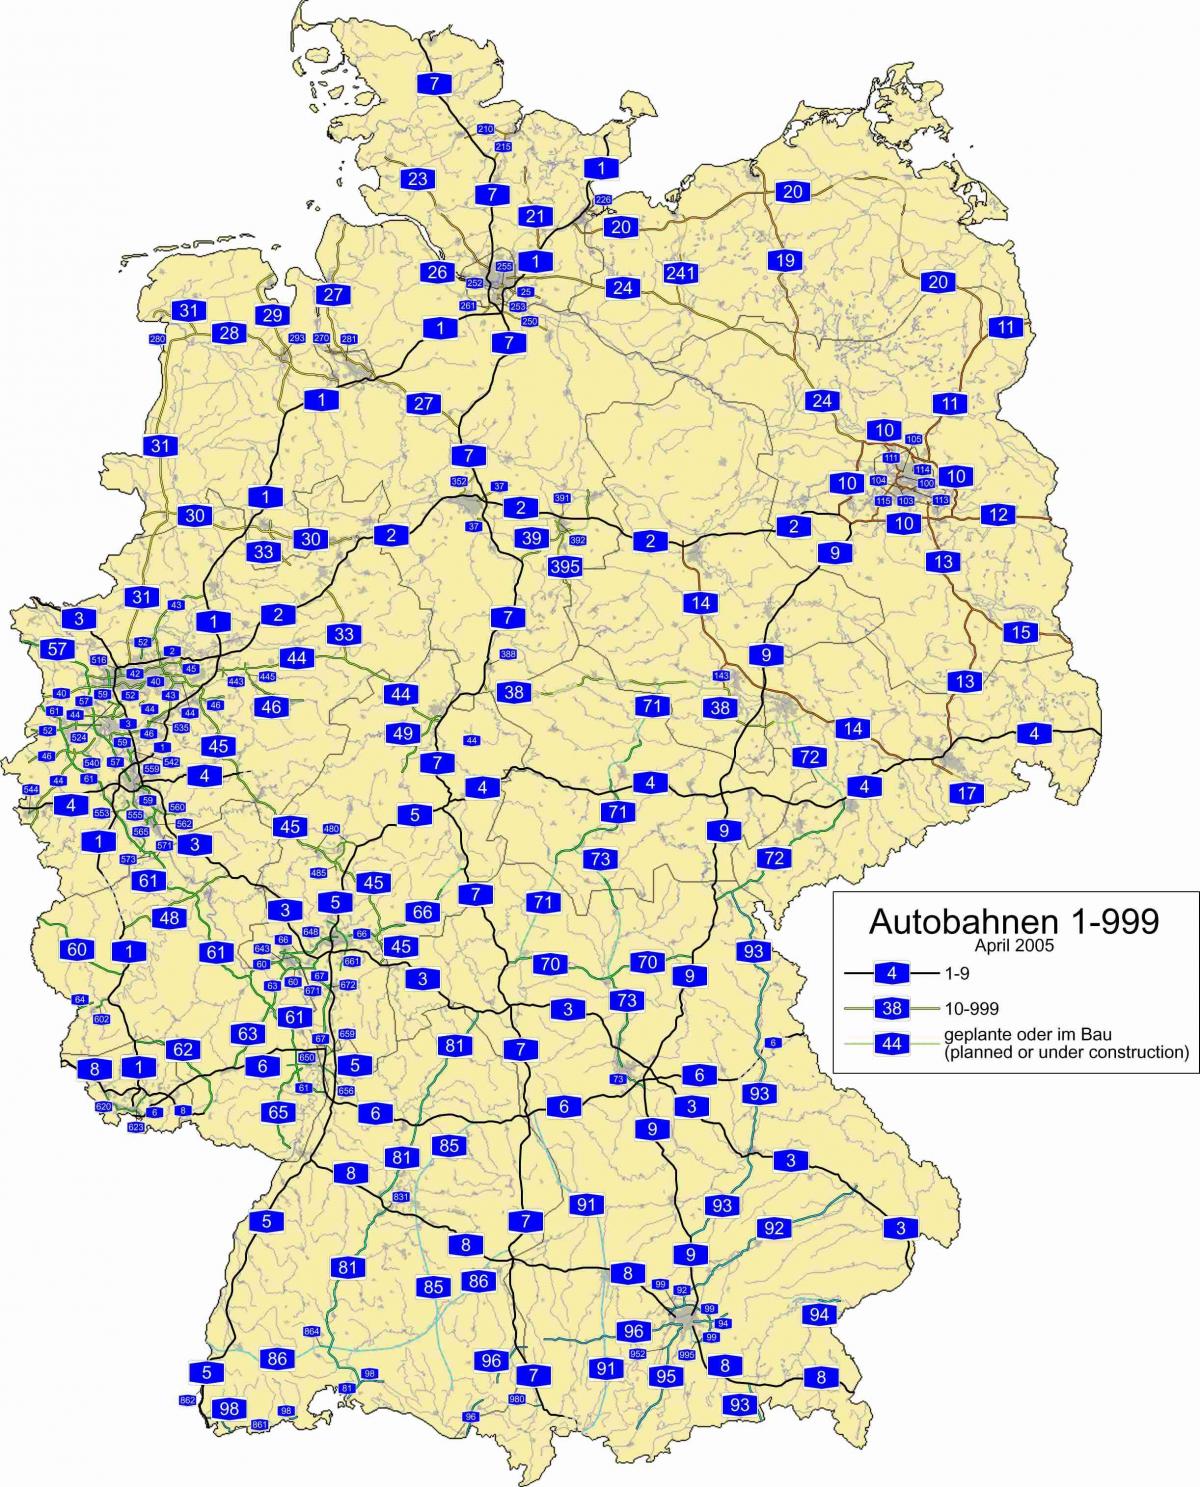 Motorway map of Germany